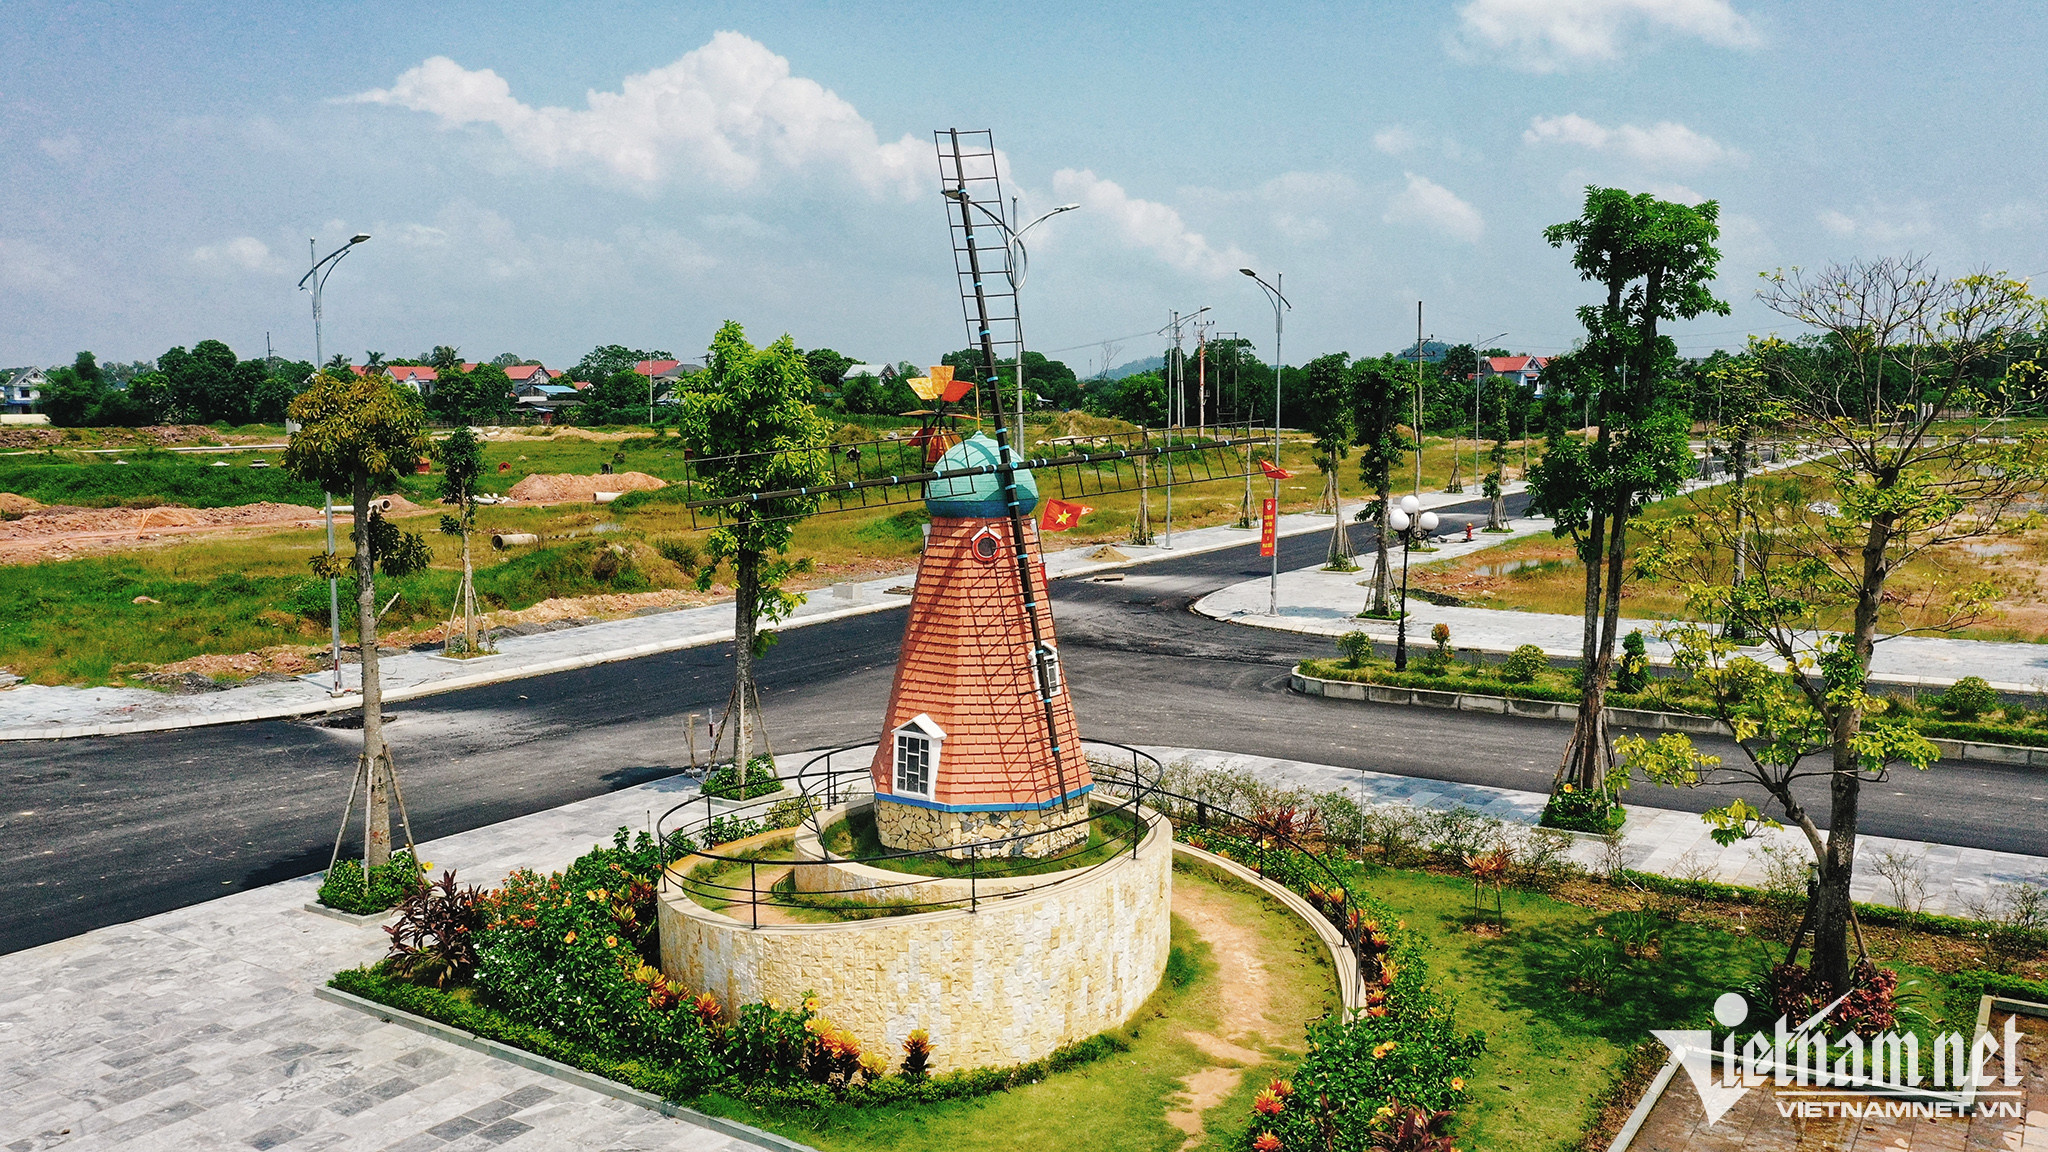 Loạt công trình nổi tiếng thế giới xuất hiện ở thành phố mới thuộc Thái Nguyên